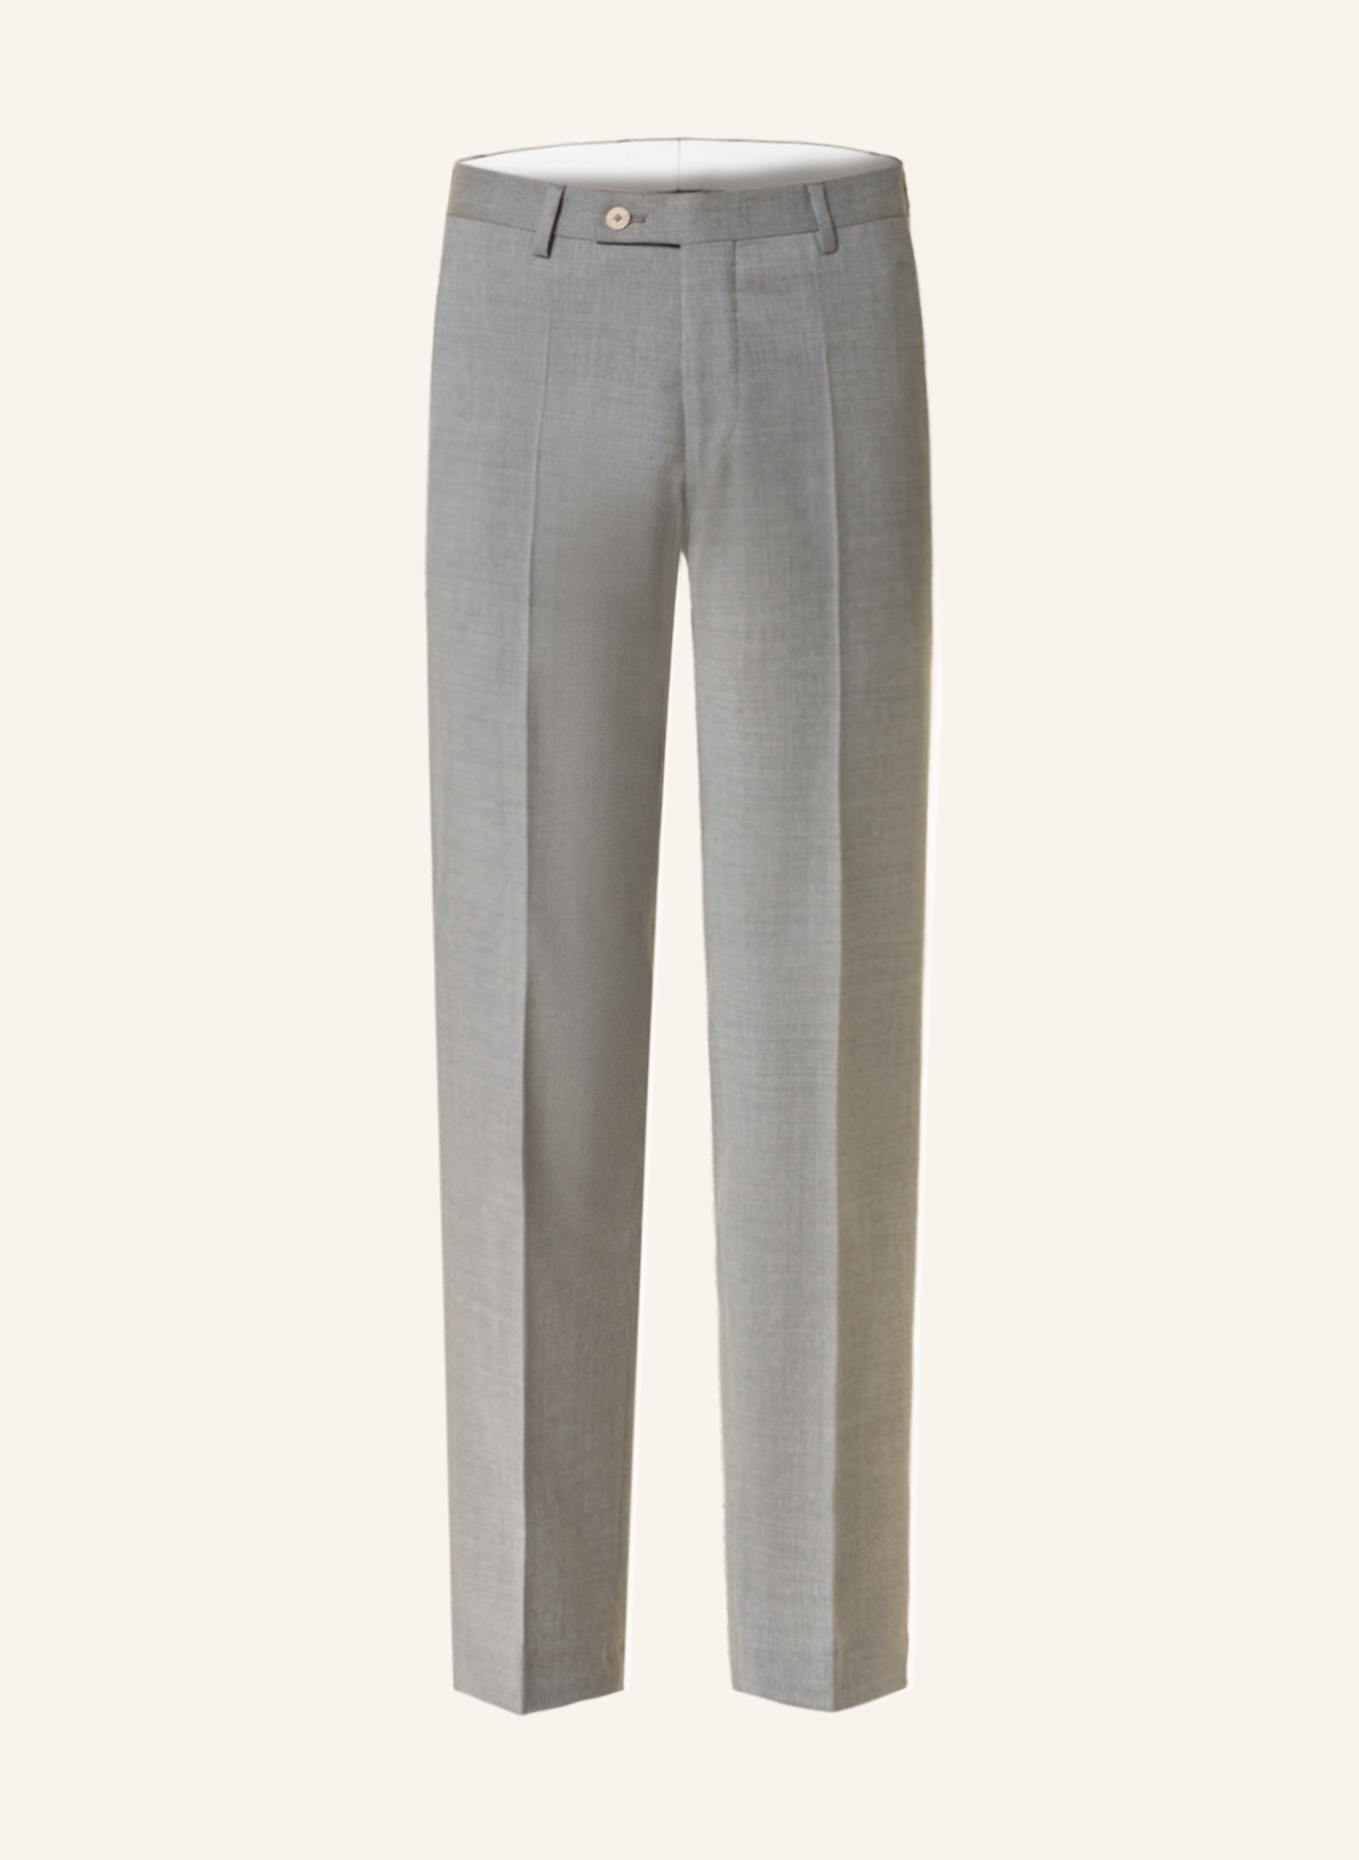 BALDESSARINI Suit trousers extra slim fit, Color: 1113 Lunar Rock (Image 1)